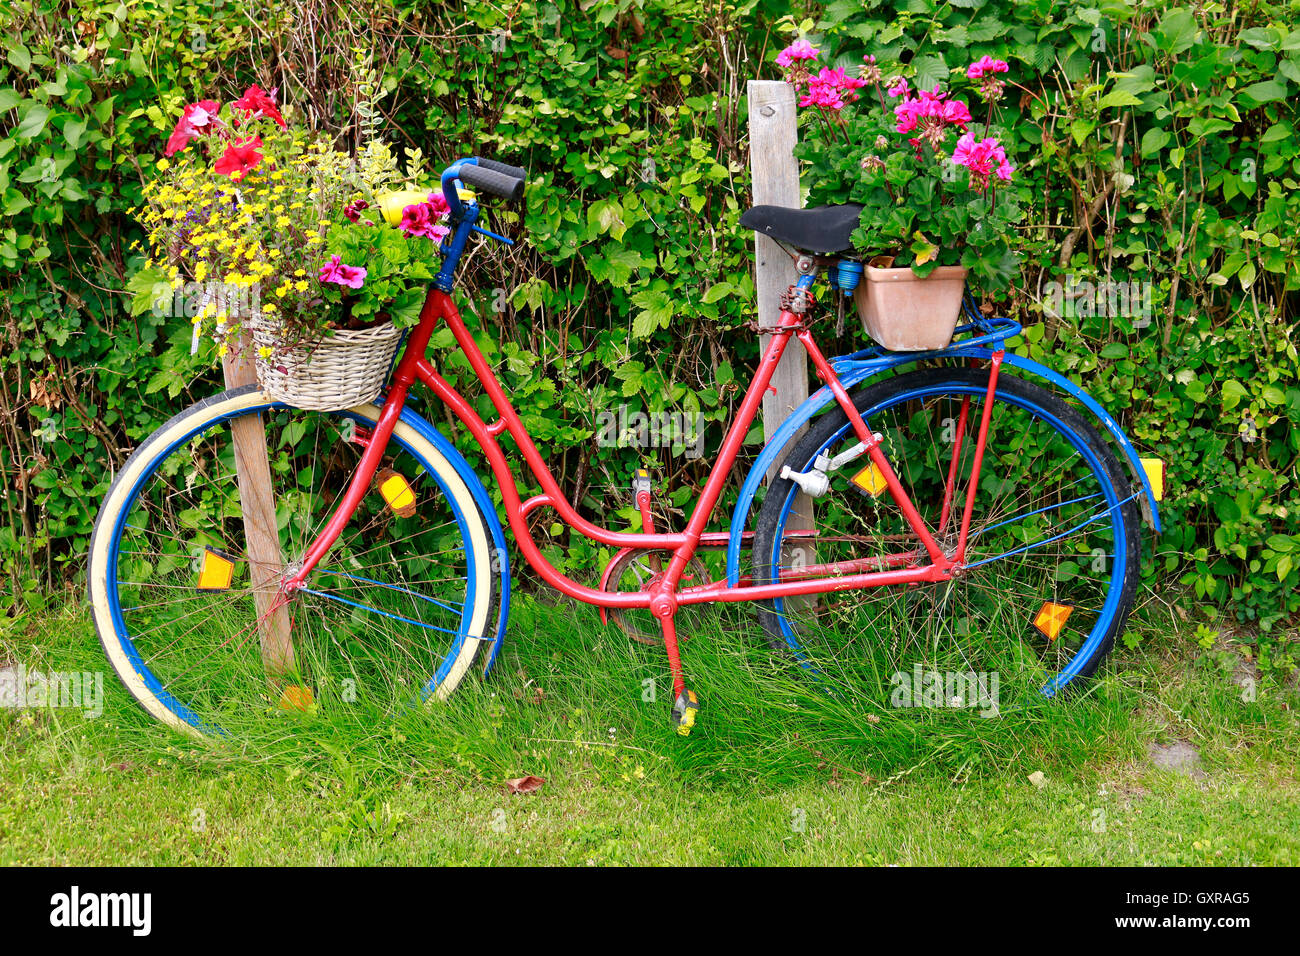 Fahrrad, Blumen, Ruegen Foto stock - Alamy